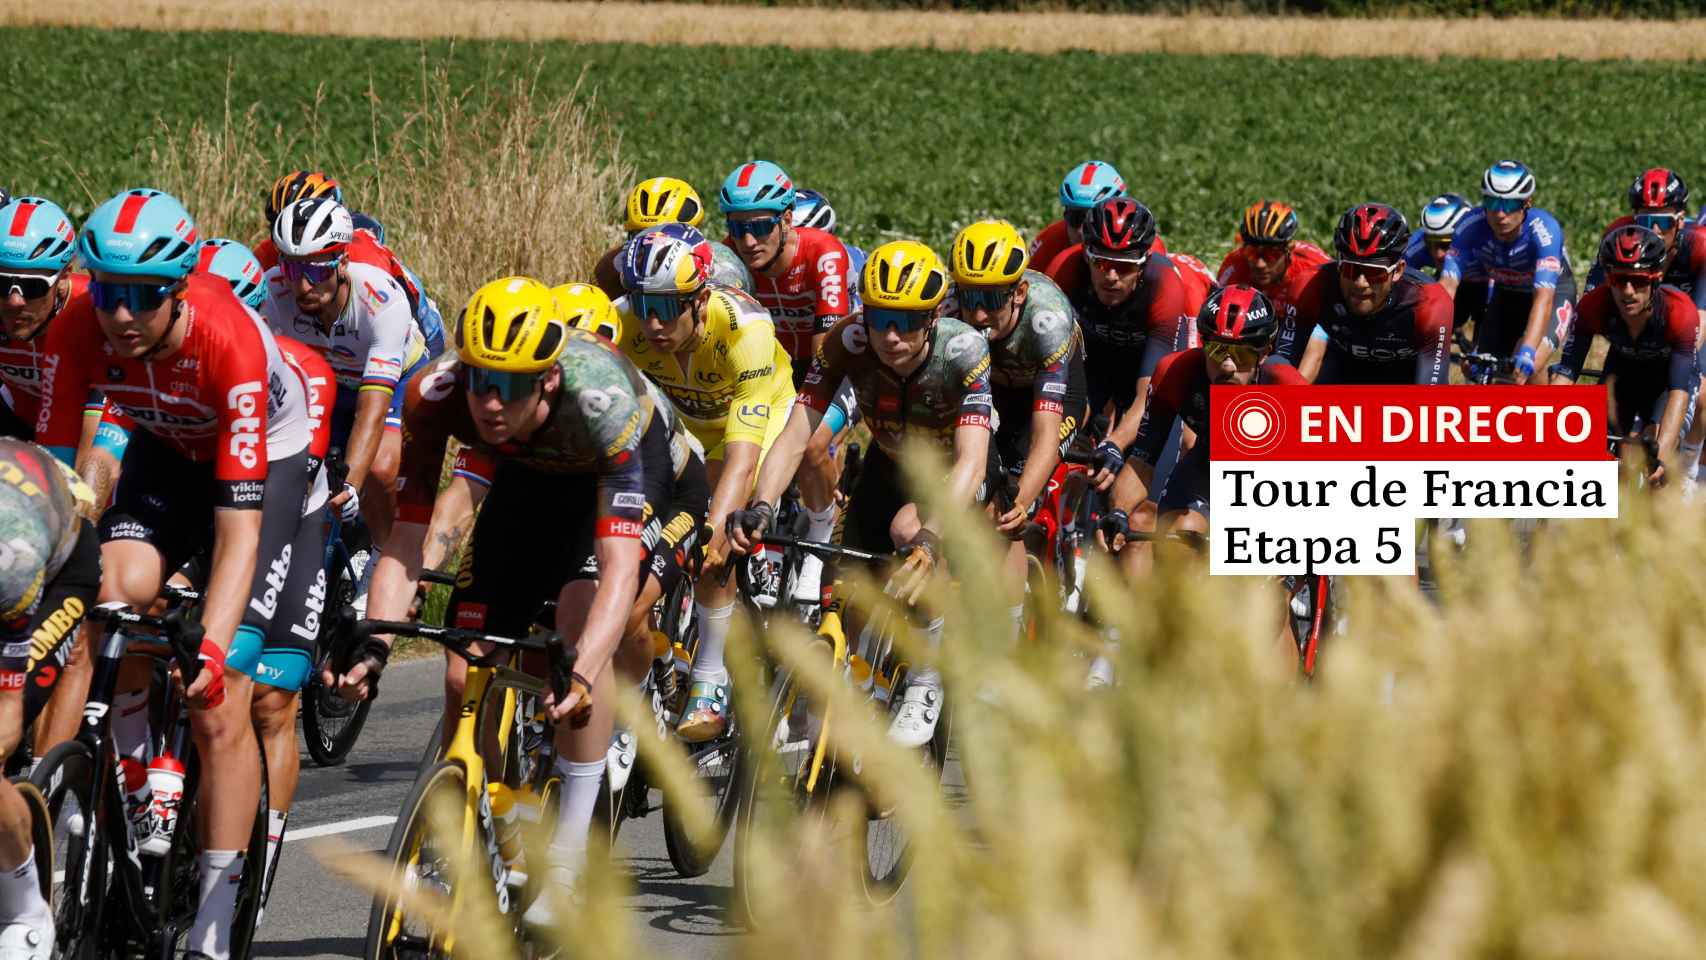 Tour de Francia 2022 hoy, en directo | Etapa 5 en vivo